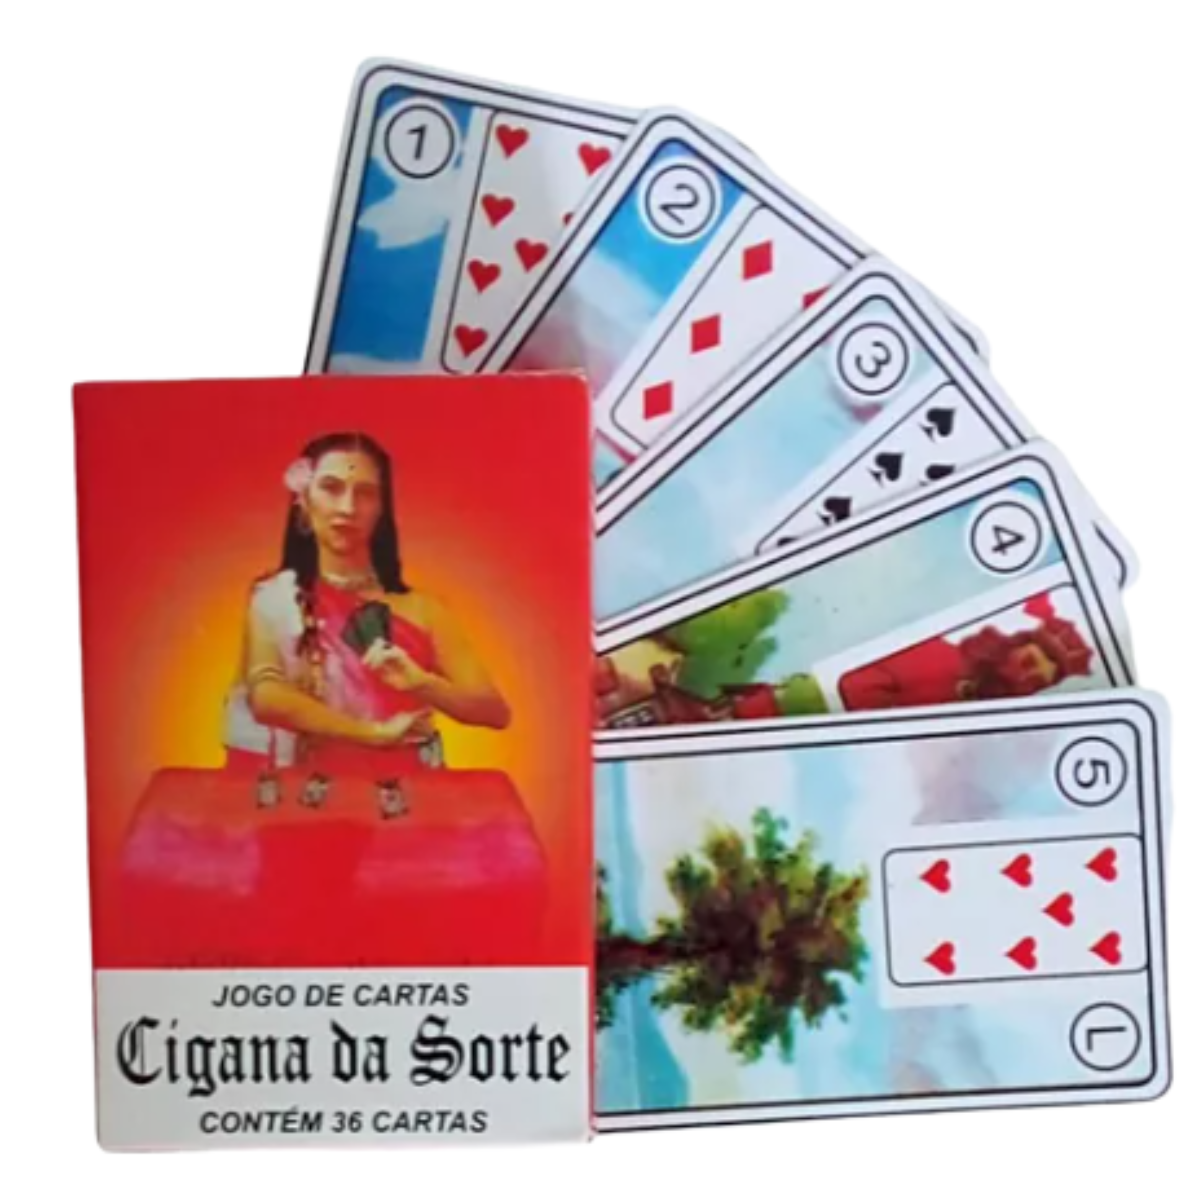 Cartas Ciganas: do baralho cigano ao tarot online